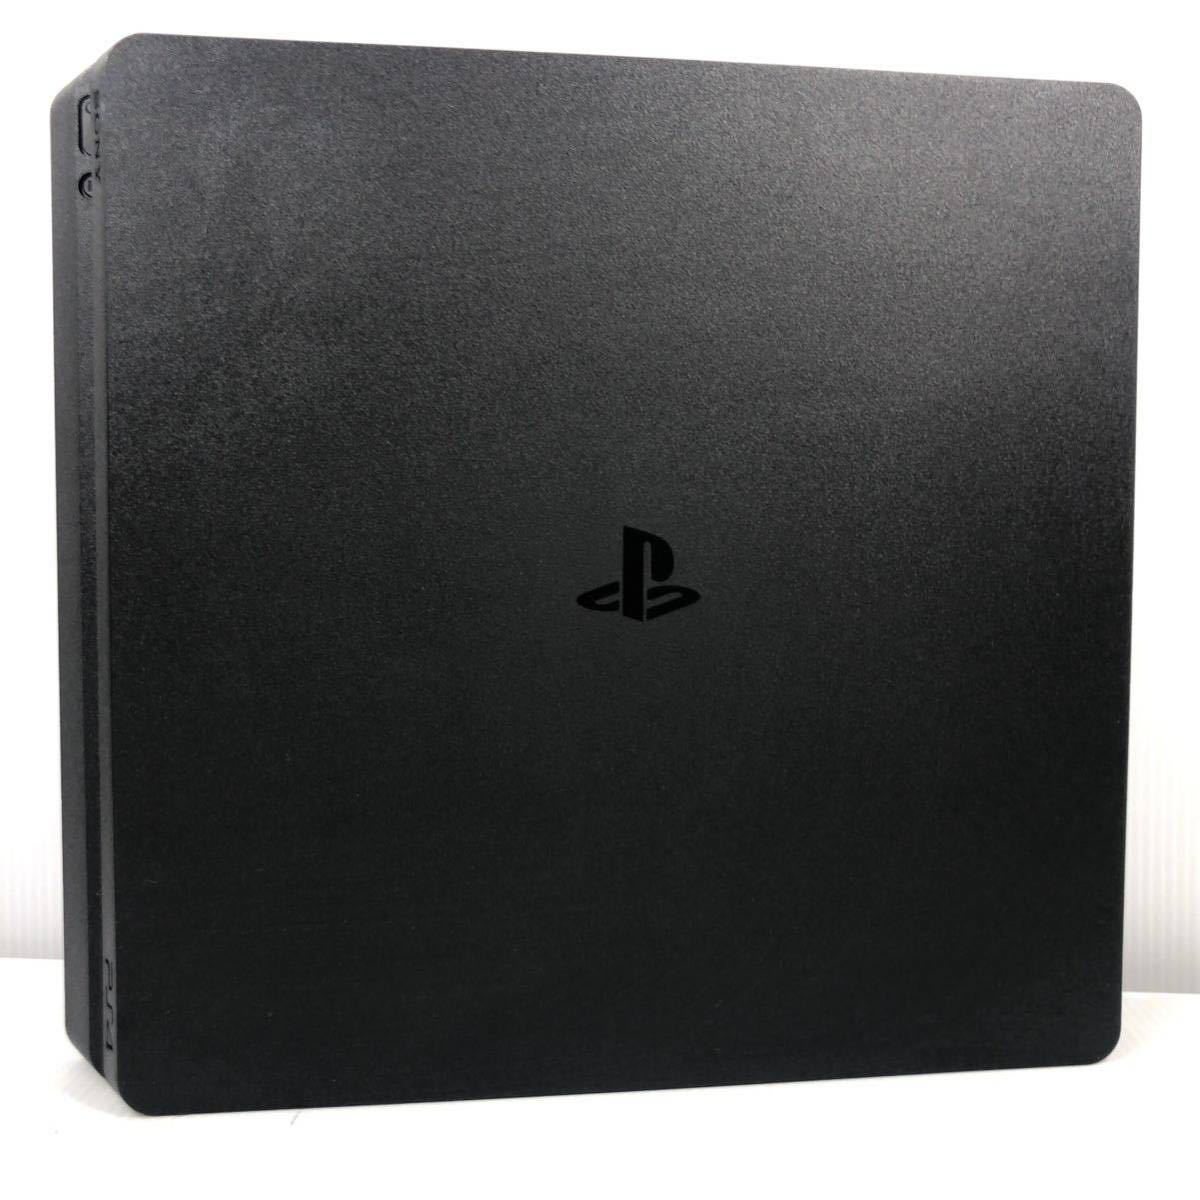 動作品】PS4 本体 SONY ソニー 薄型 PlayStation4 CUH-2200A 500GB